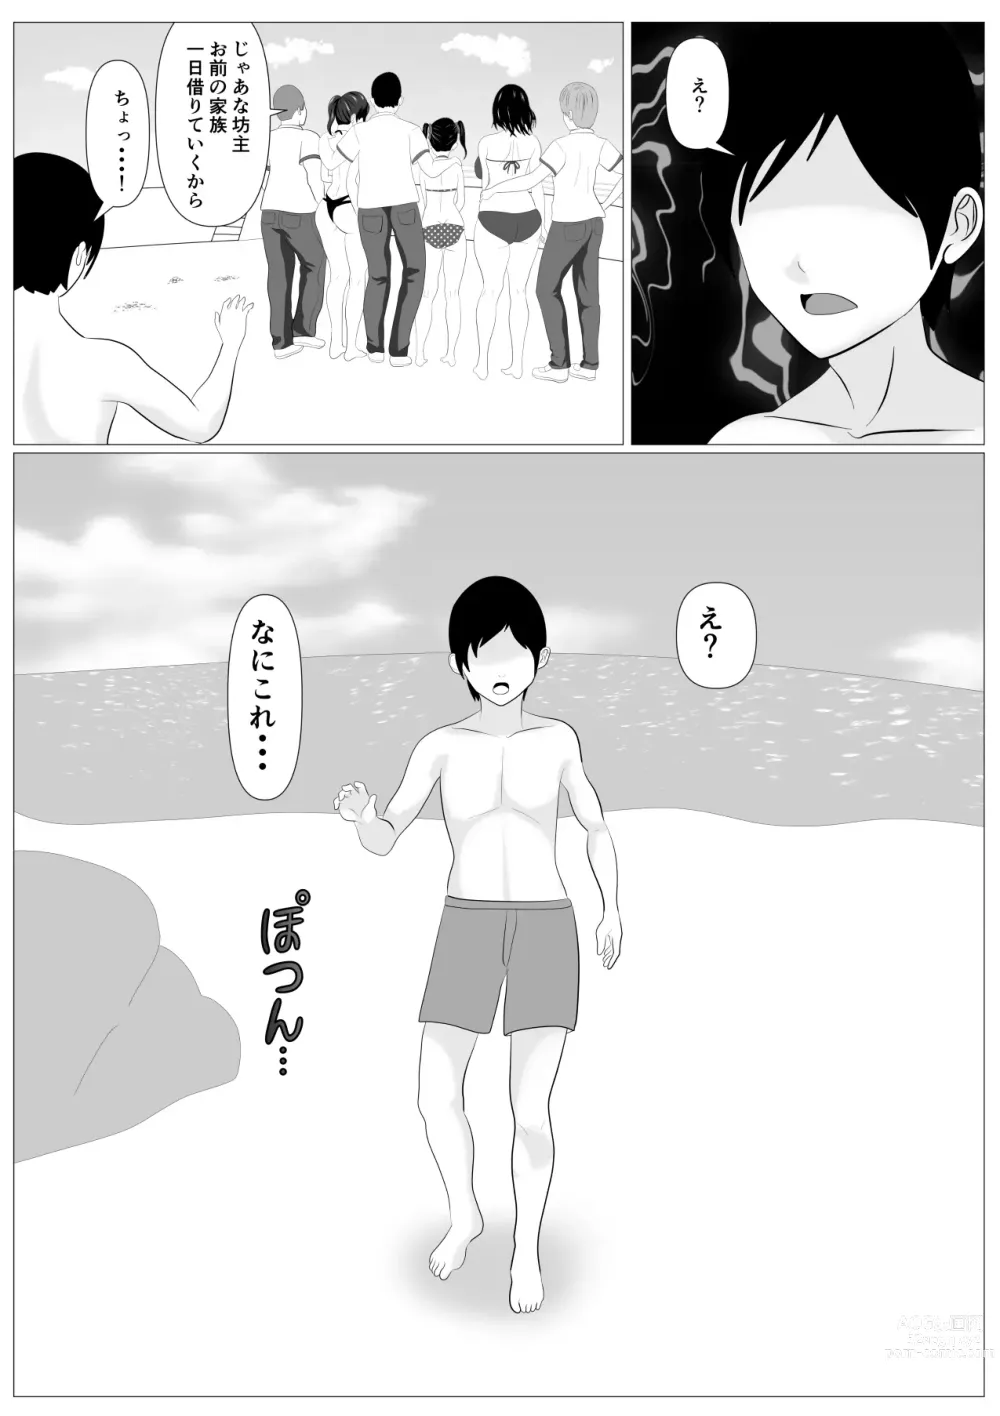 Page 75 of doujinshi Kazoku Torare